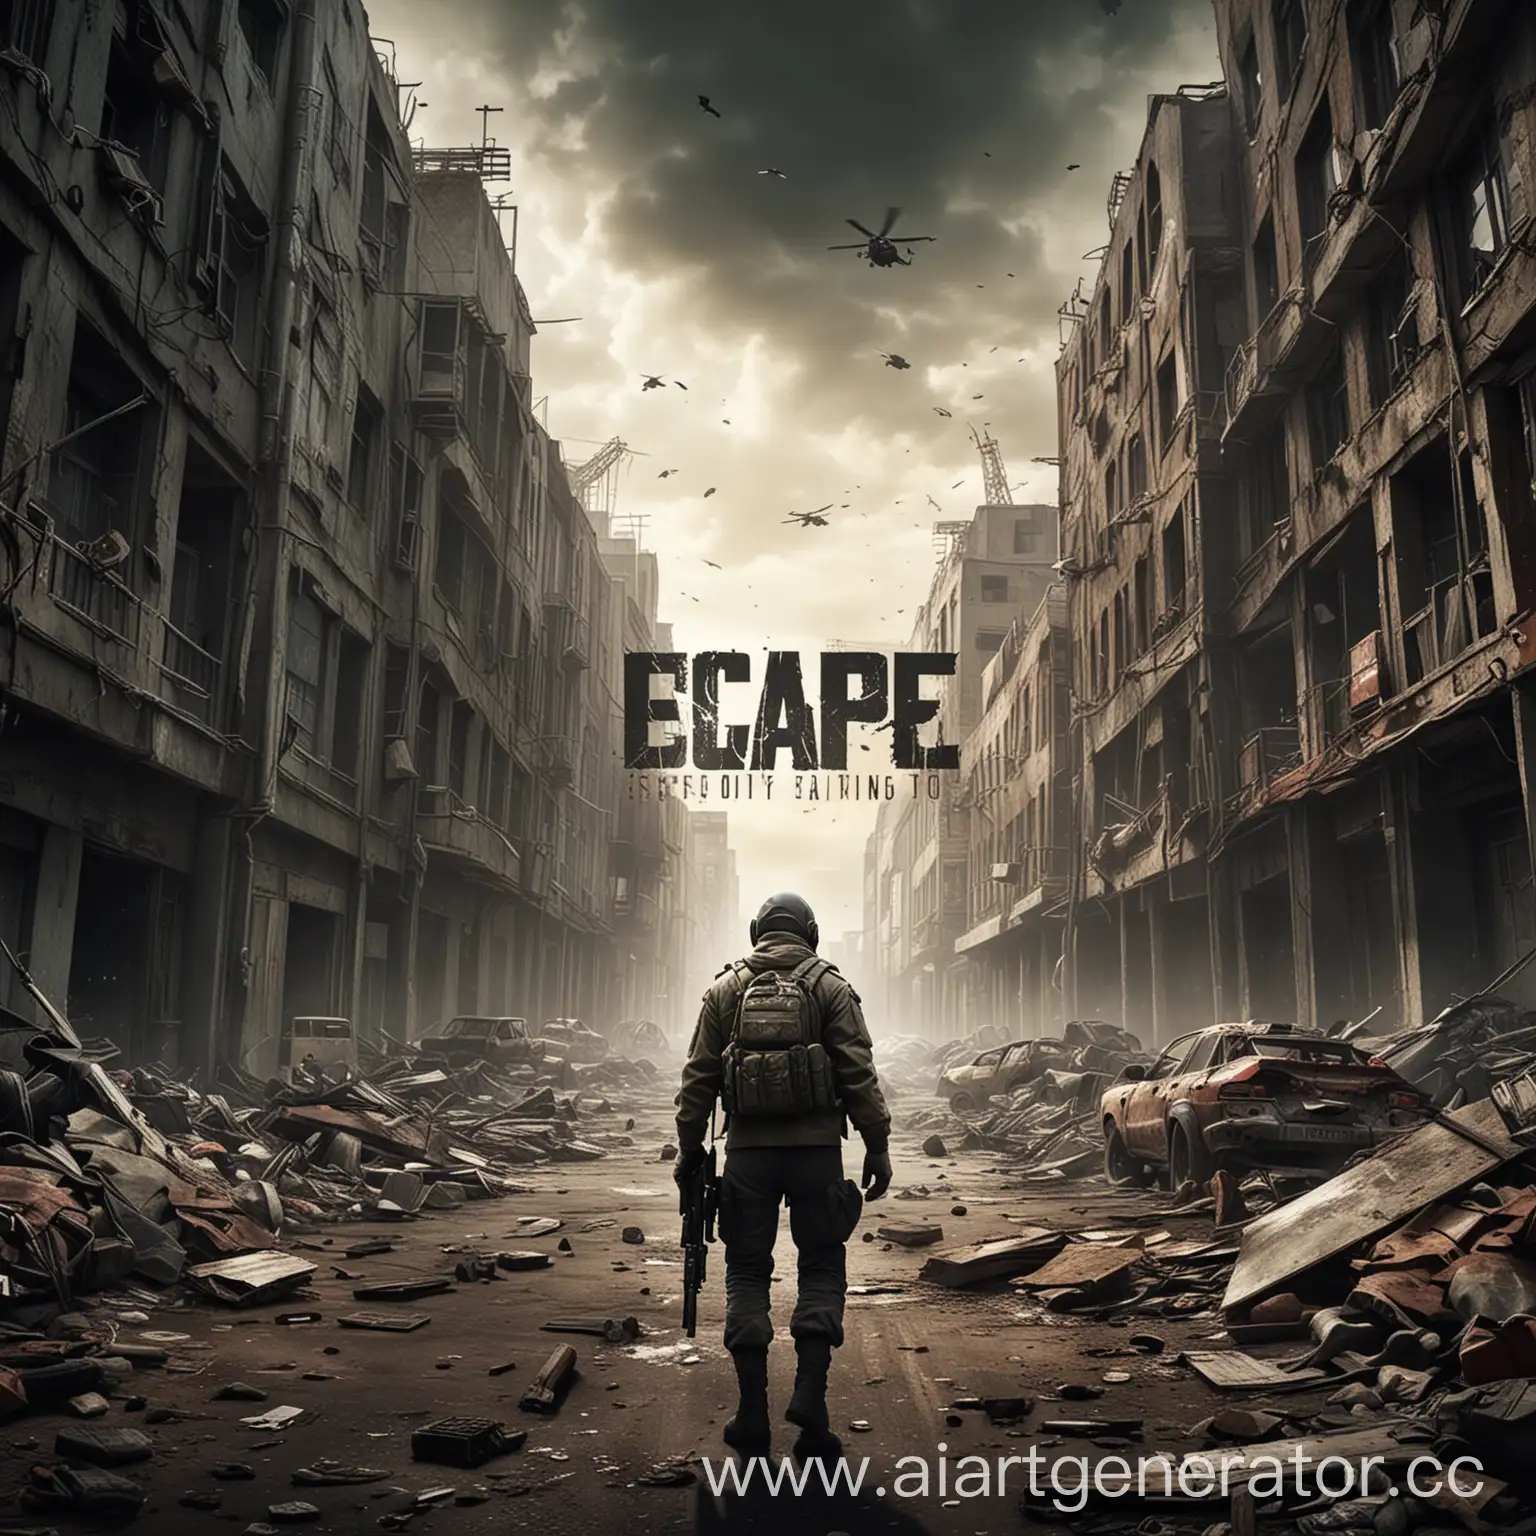 Создайте высококачественный постер для игры Escape from Tarkov. На постере должно быть выделено название игры "Escape from Tarkov" жирным шрифтом, а также слоган или ключевая фраза, отражающие захватывающий и насыщенный игровой процесс. Фон должен быть выдержан в суровом индустриальном стиле, который задает тон реалистичному игровому процессу, ориентированному на выживание. Включите некоторые визуальные элементы, которые намекают на игровую механику исследования, сбора мусора и ведения боя.